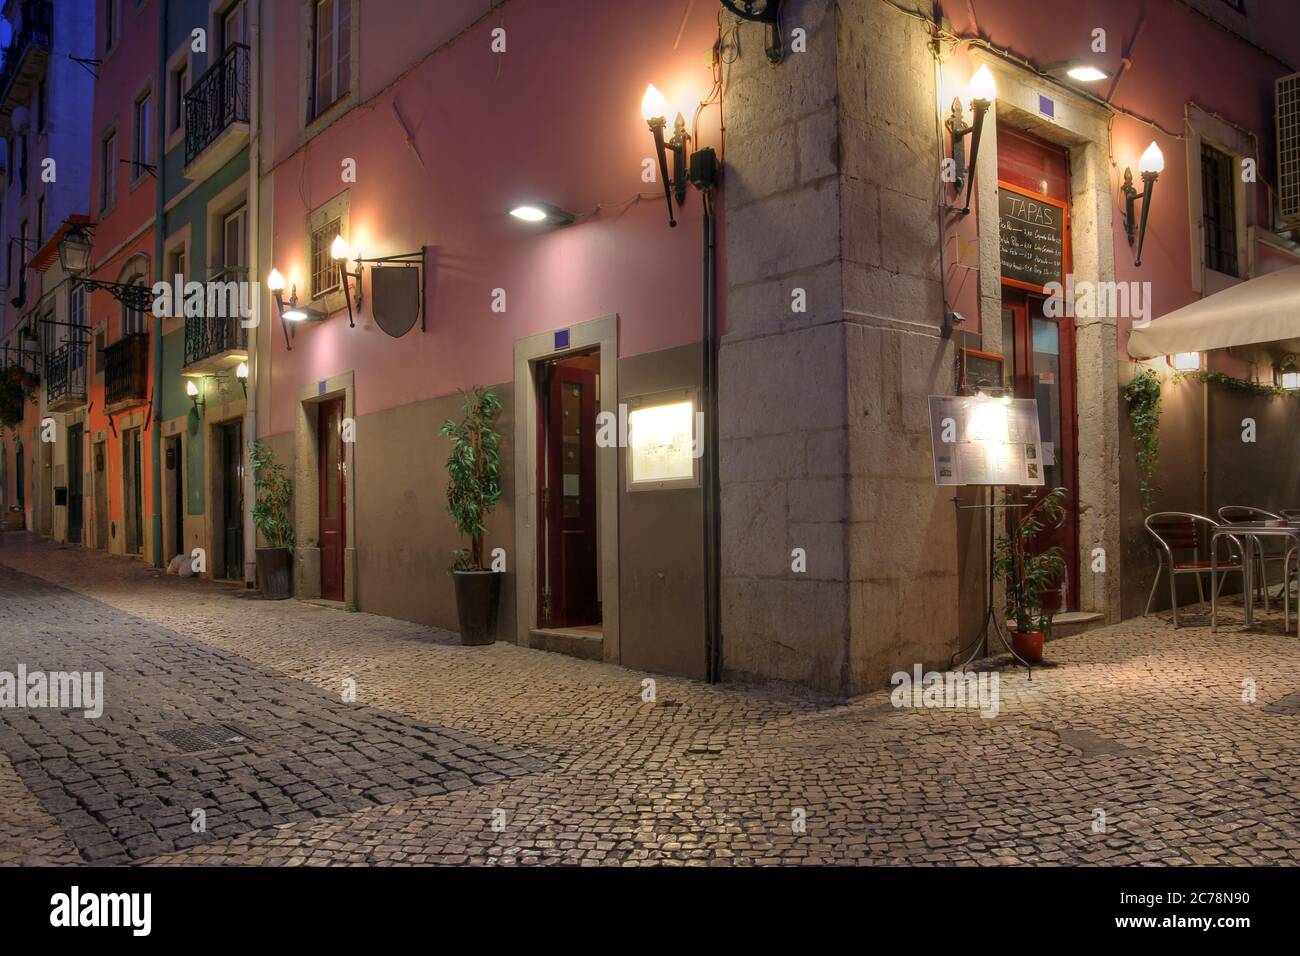 Scena notturna nel quartiere Chiado, Lisbona, Portogallo, con un ristorante di tapas ad angolo. Le strette strade acciottolate, e gli alti edifici in pietra con Foto Stock